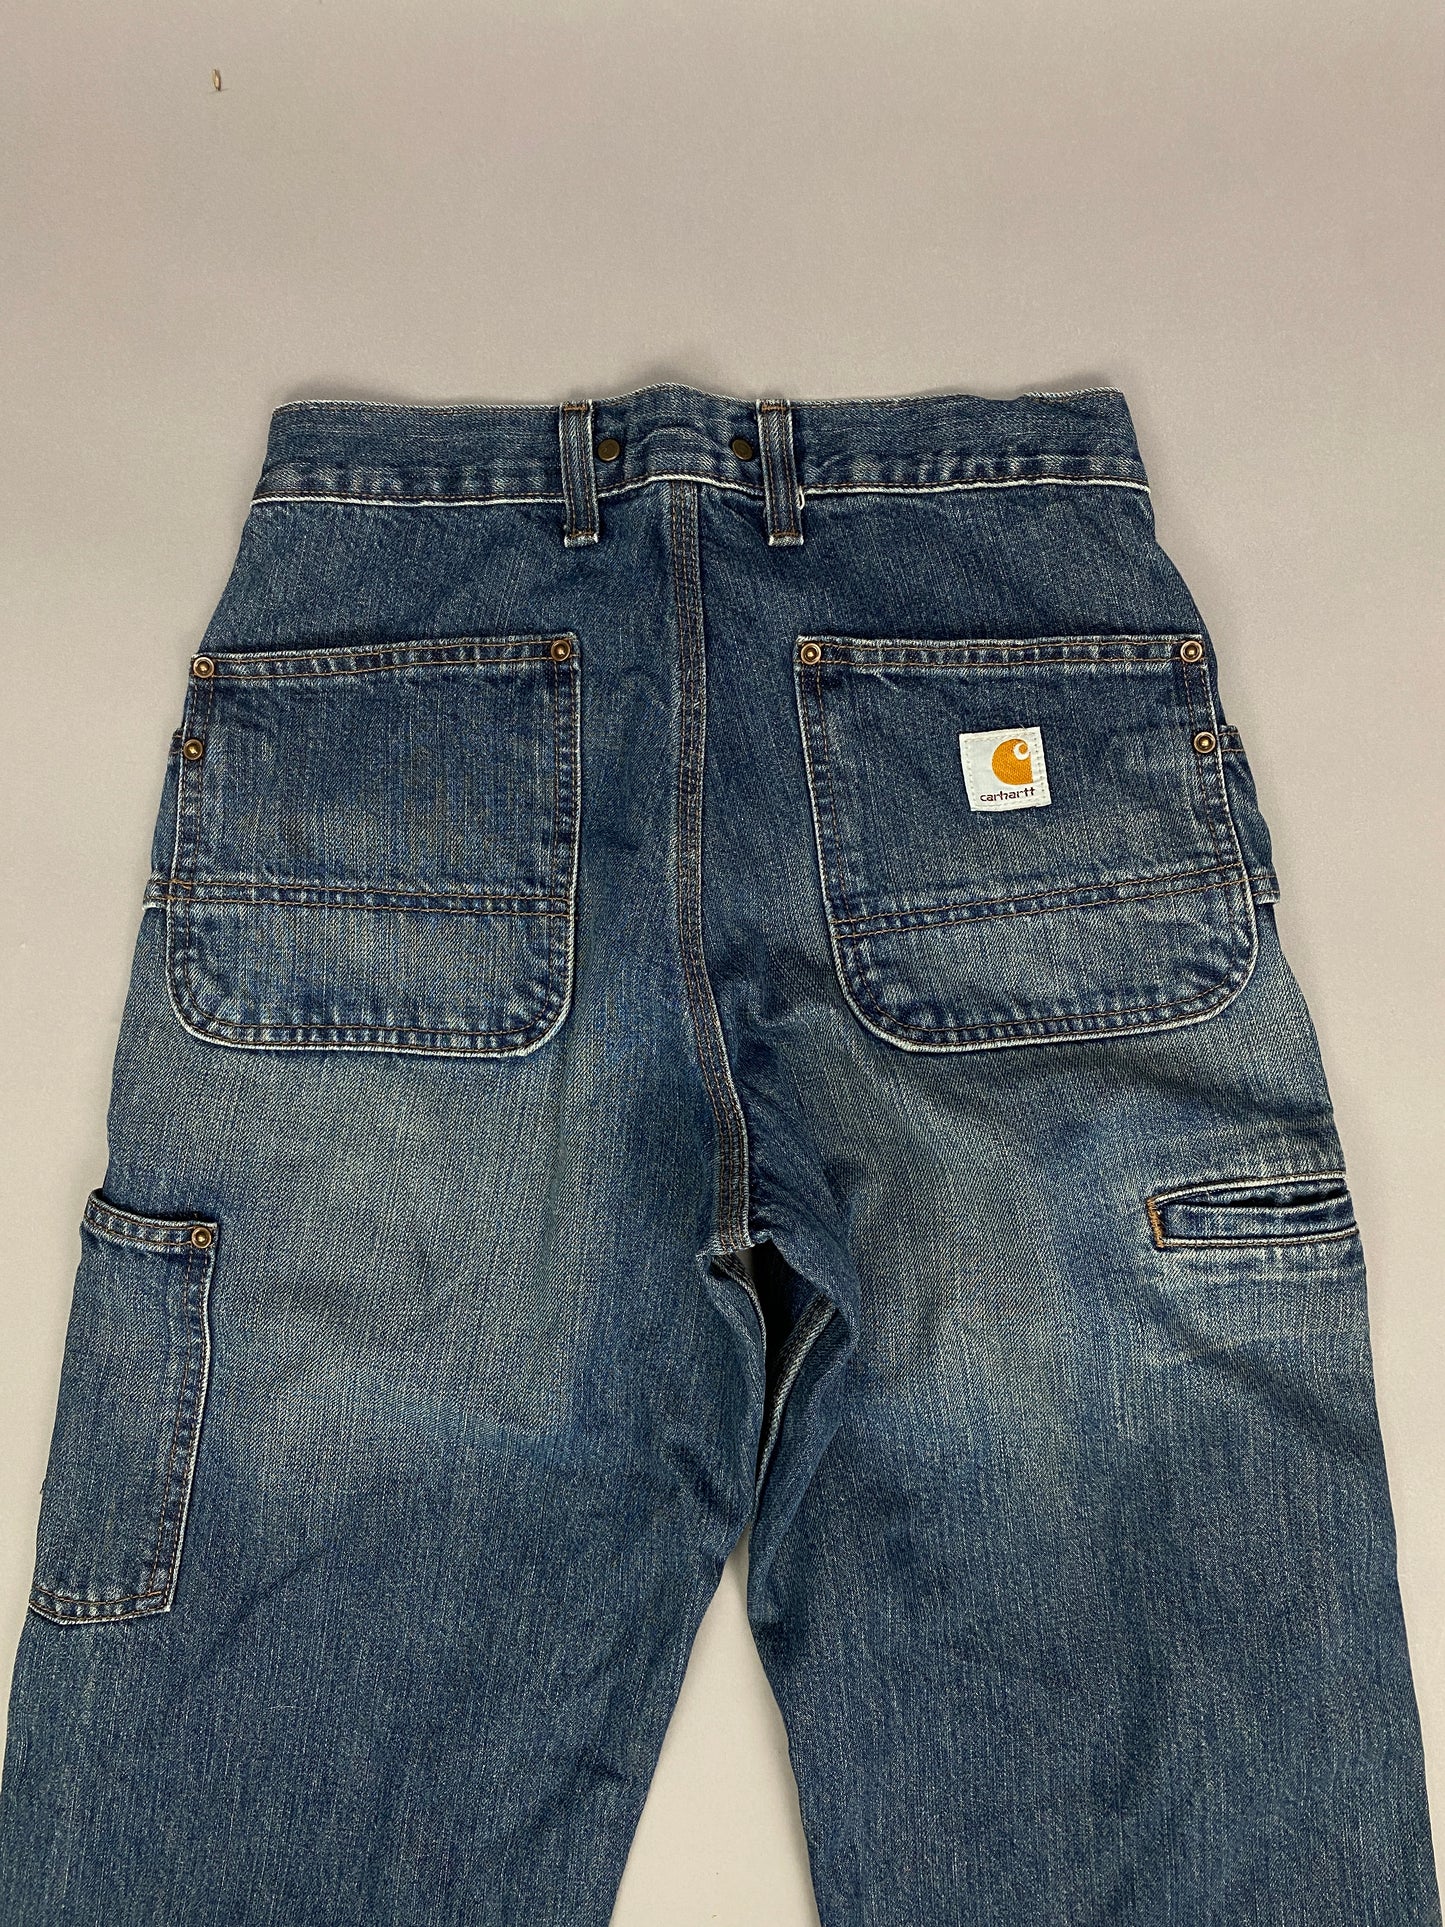 Carhartt Carpenter Jeans - 28 x 32